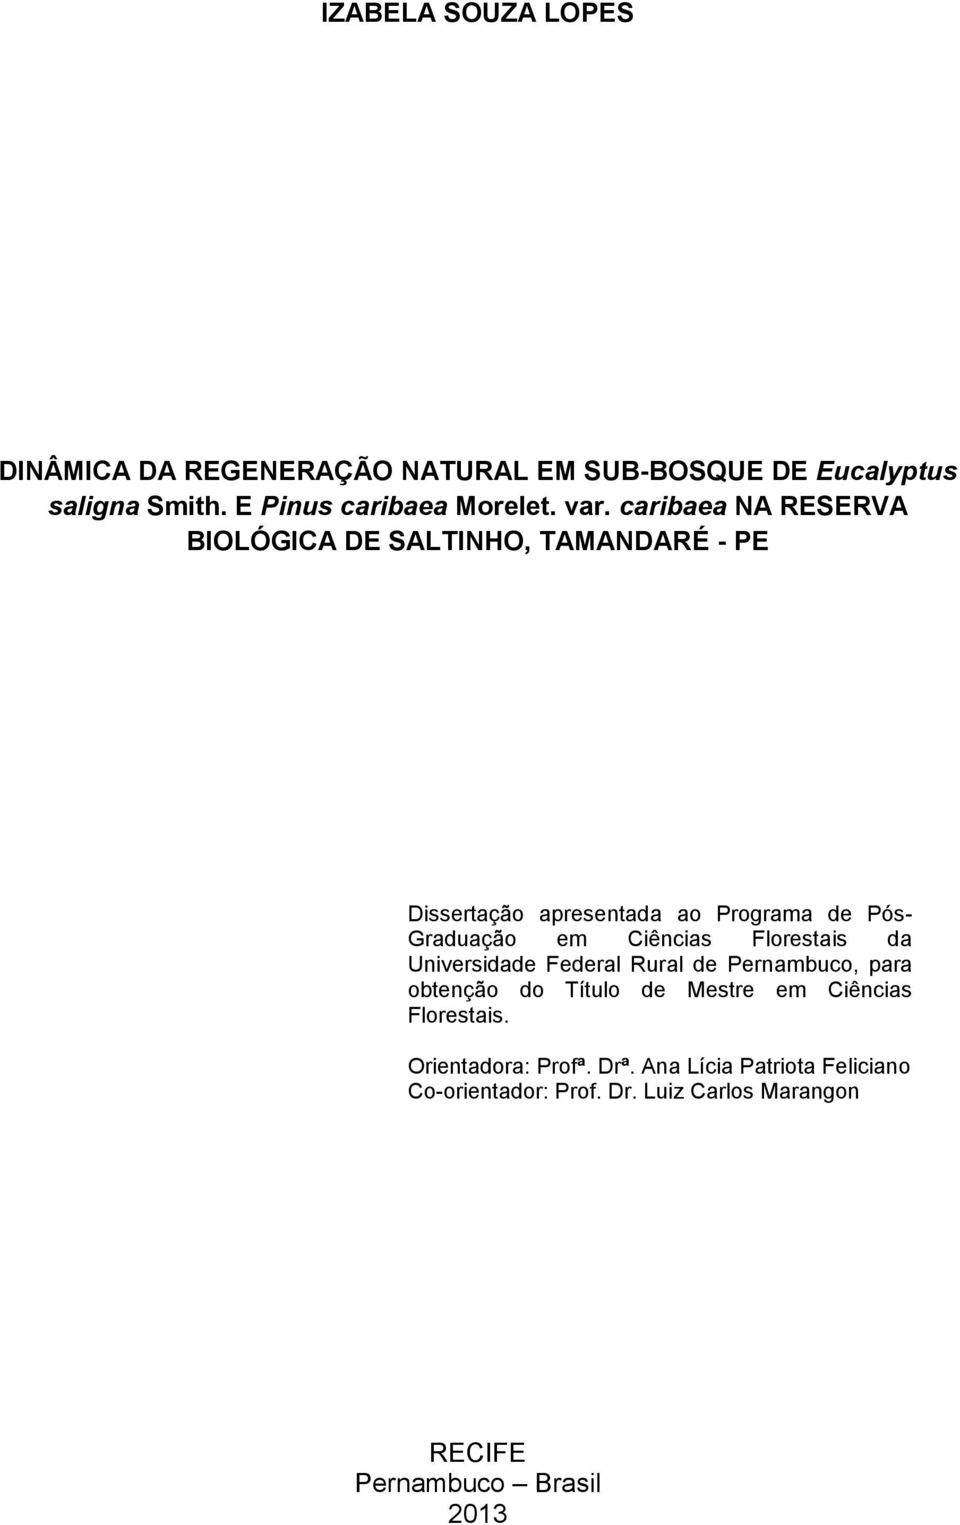 Ciências Florestais da Universidade Federal Rural de Pernambuco, para obtenção do Título de Mestre em Ciências Florestais.